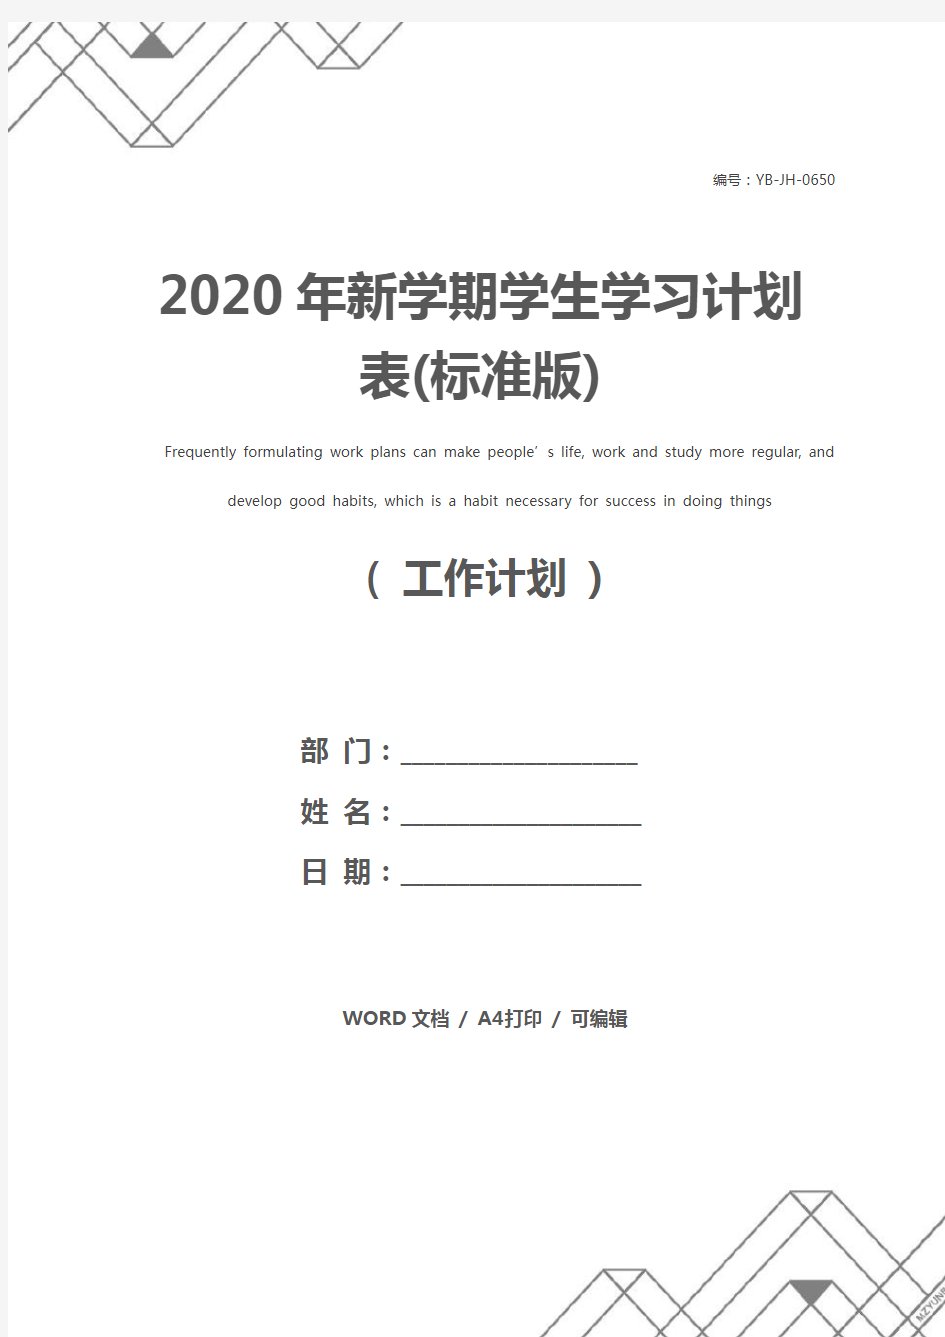 2020年新学期学生学习计划表(标准版)